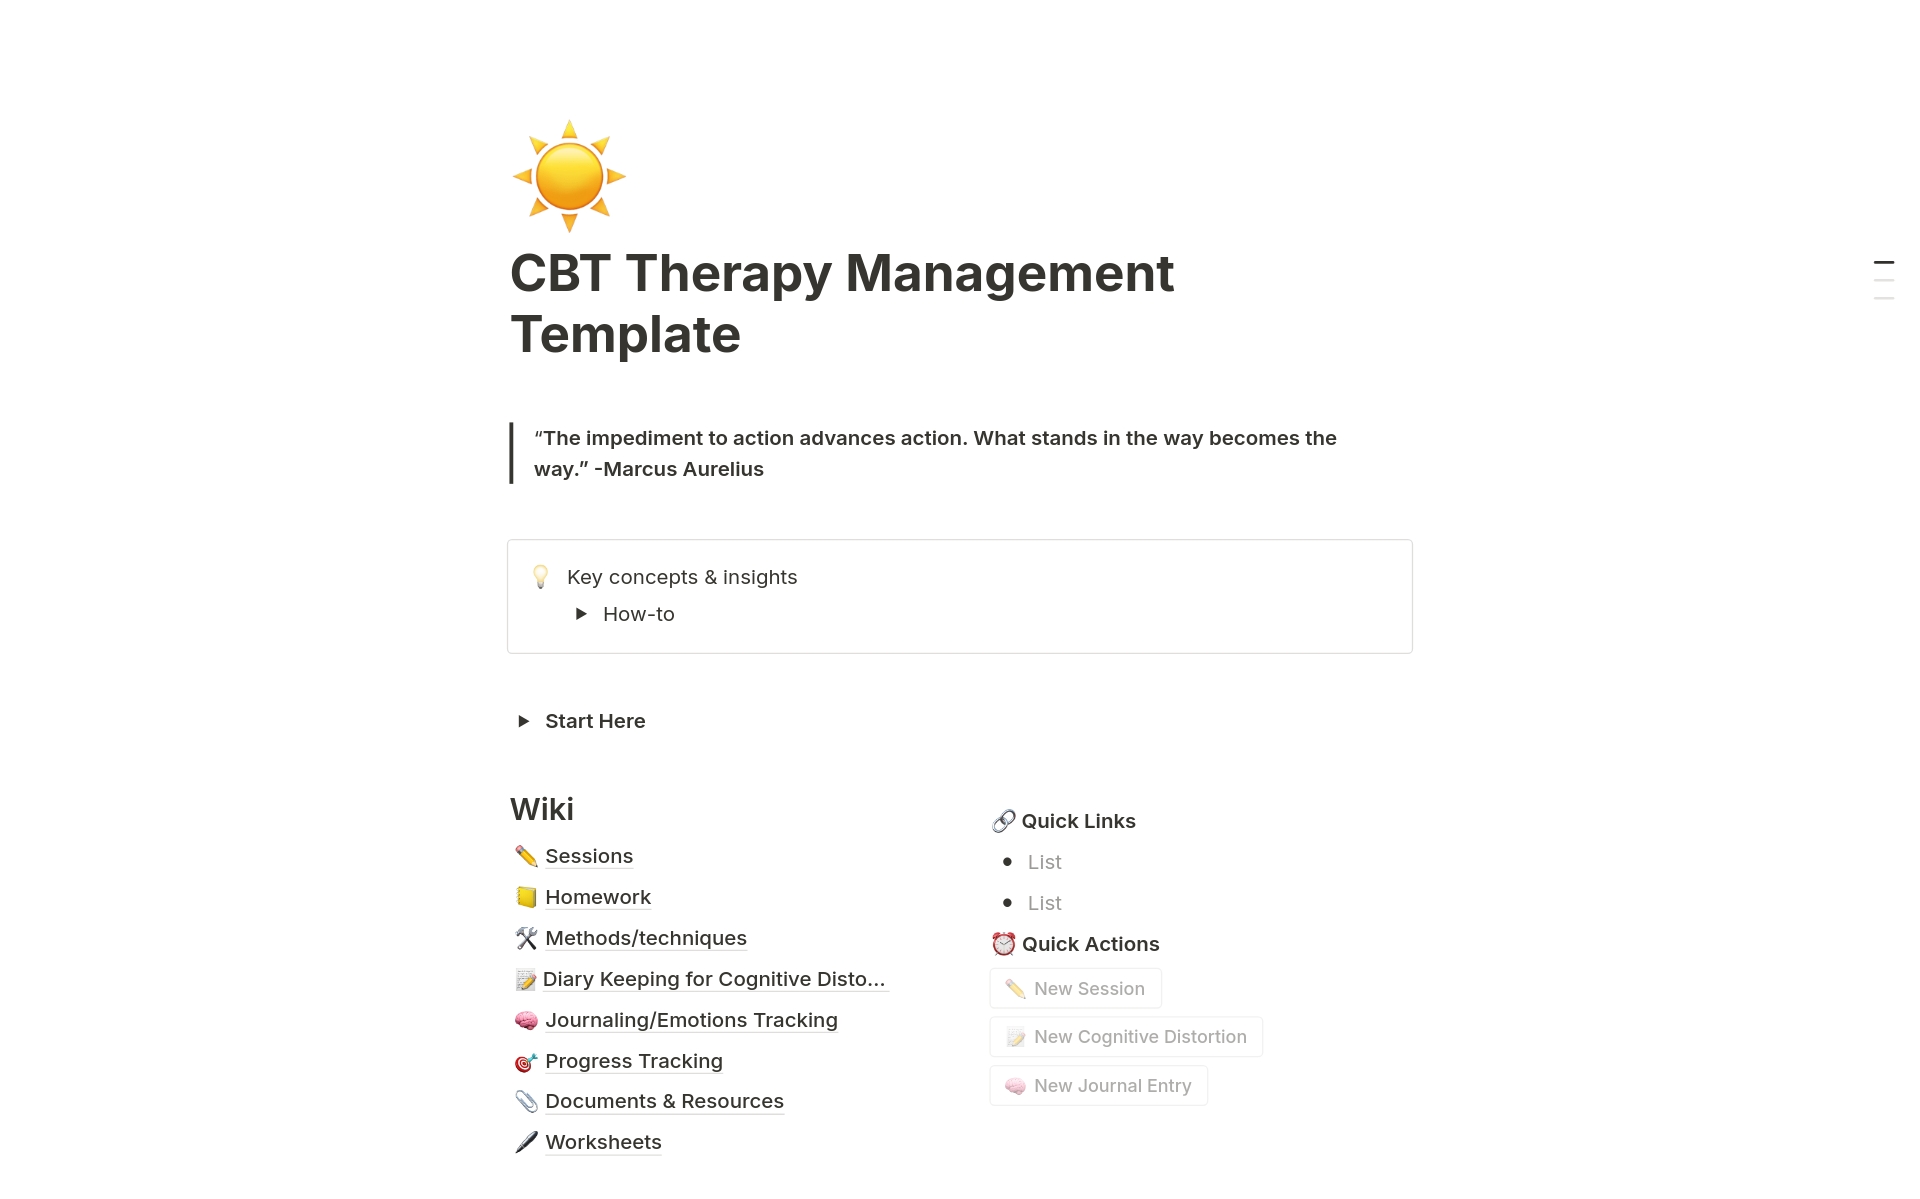 Vista previa de una plantilla para CBT Therapy Management